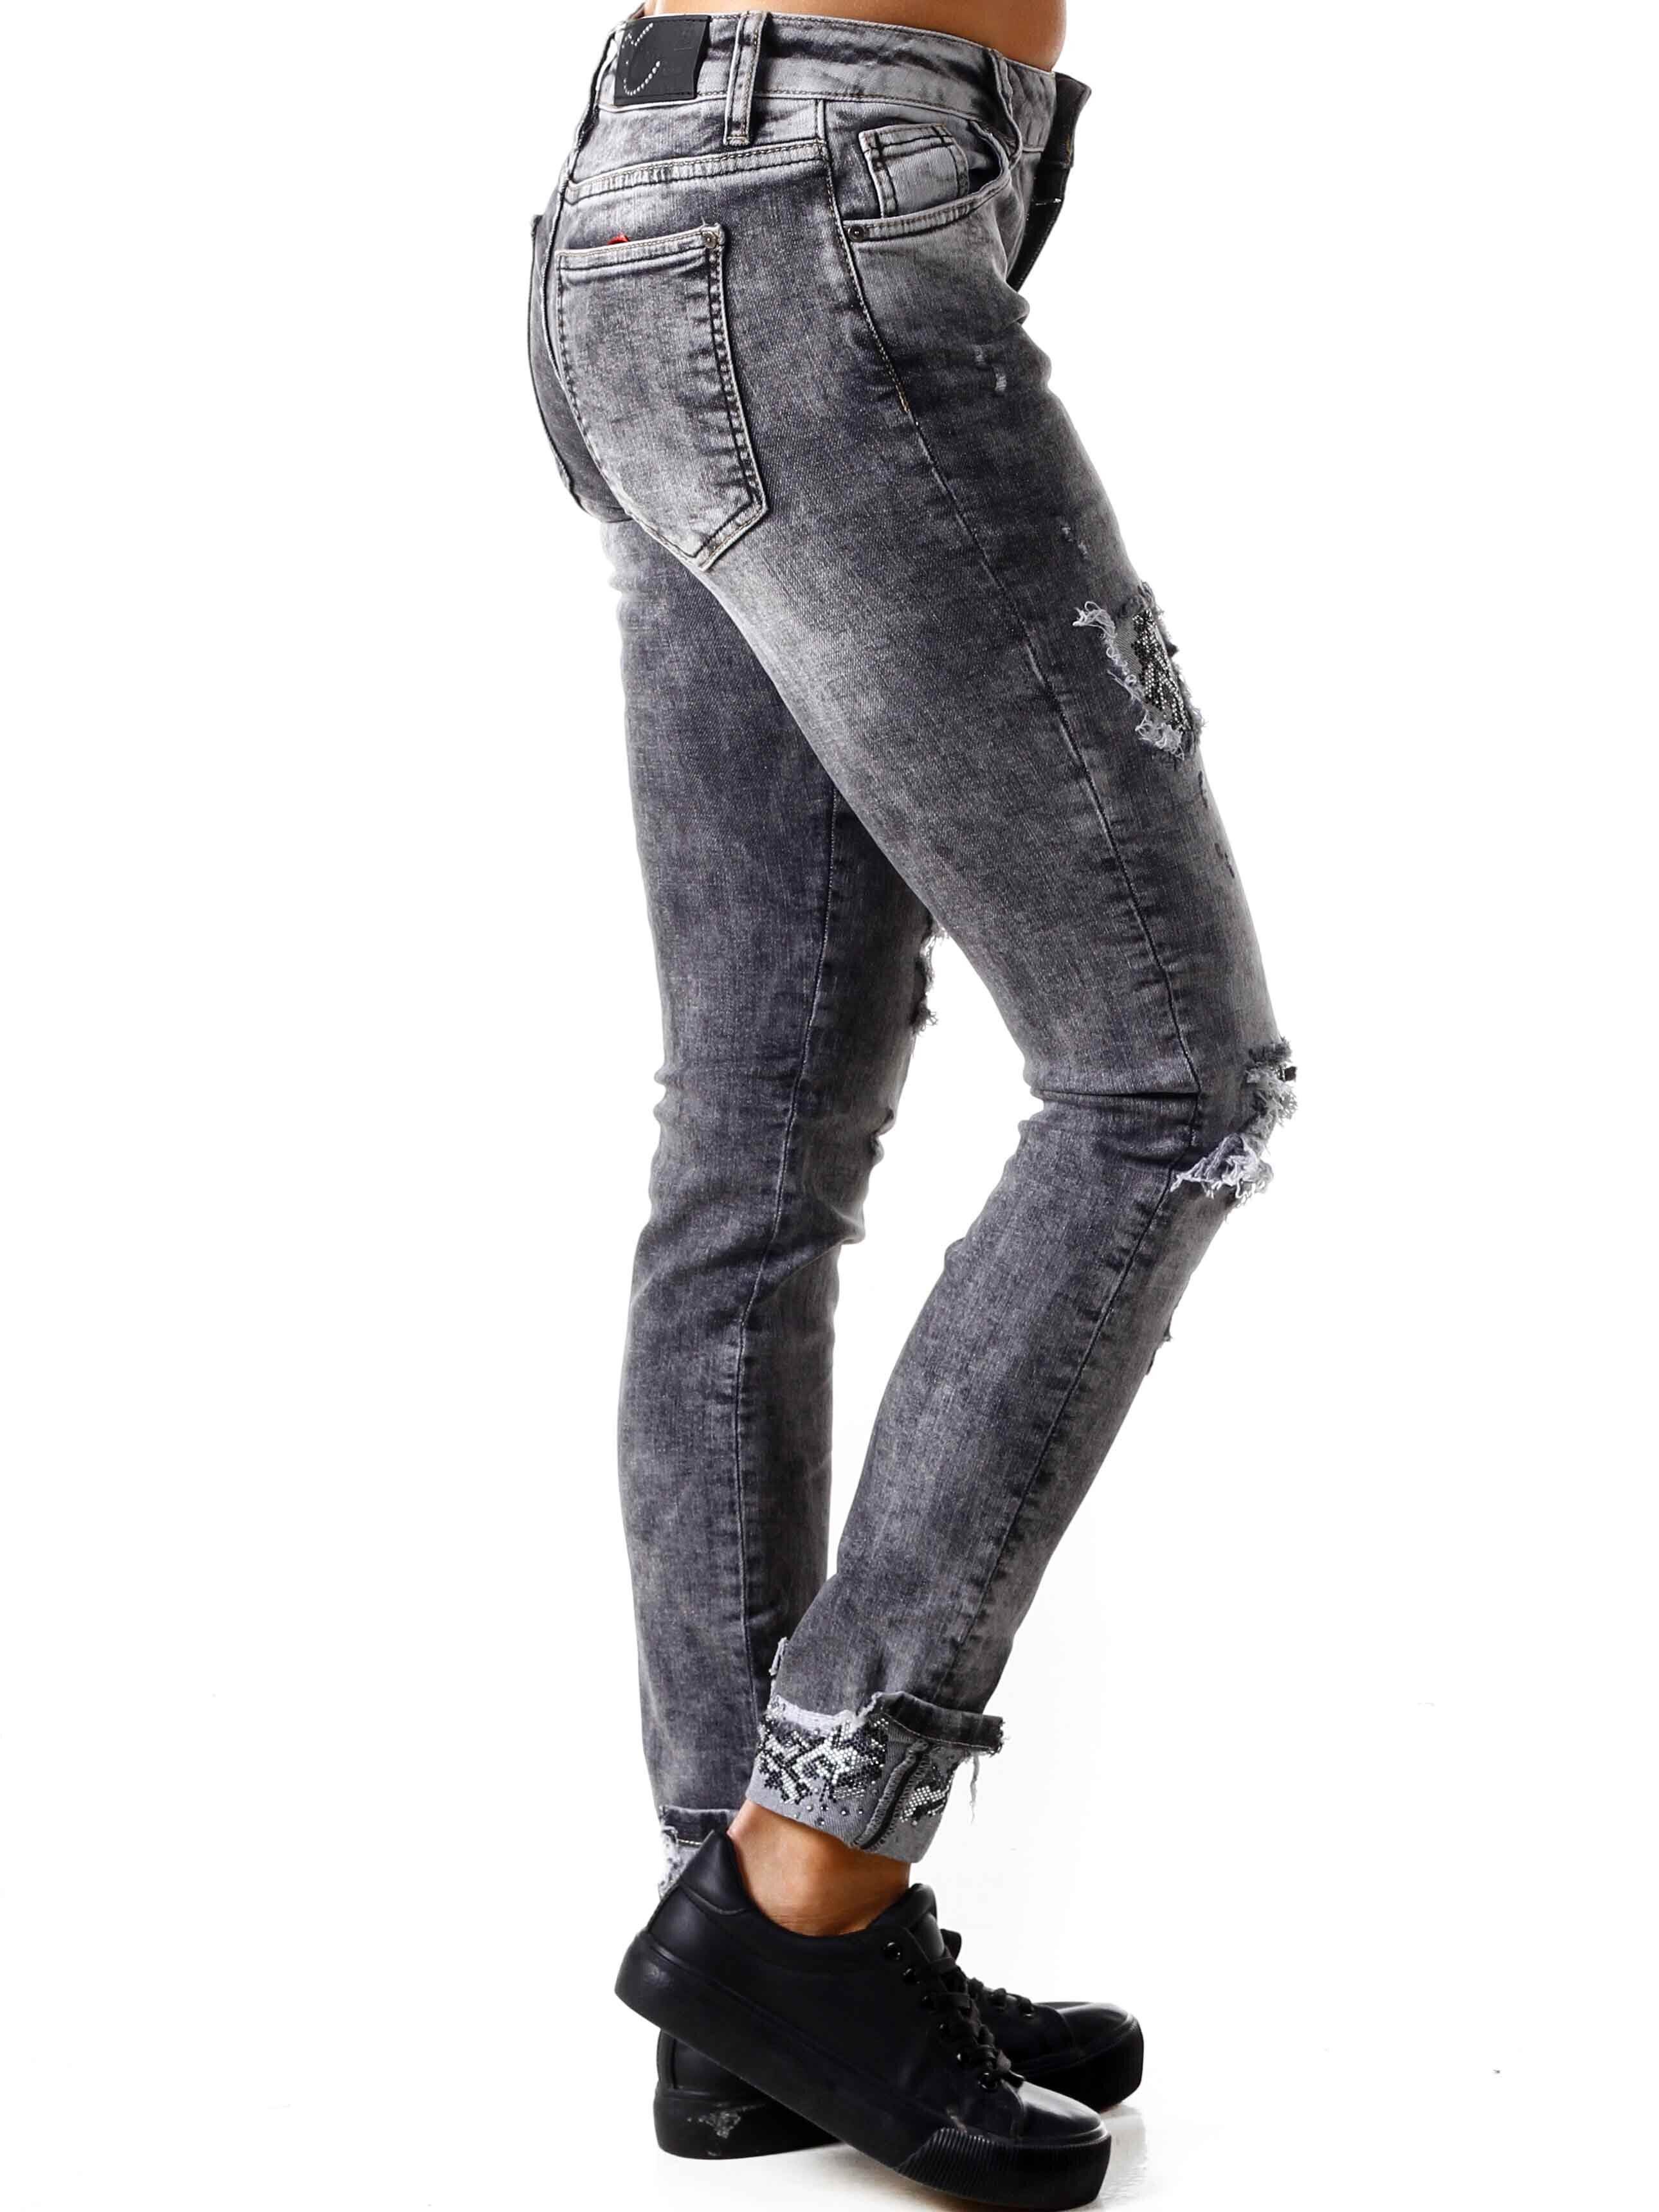  Merlini Cipo & Baxx Jeans - Grå